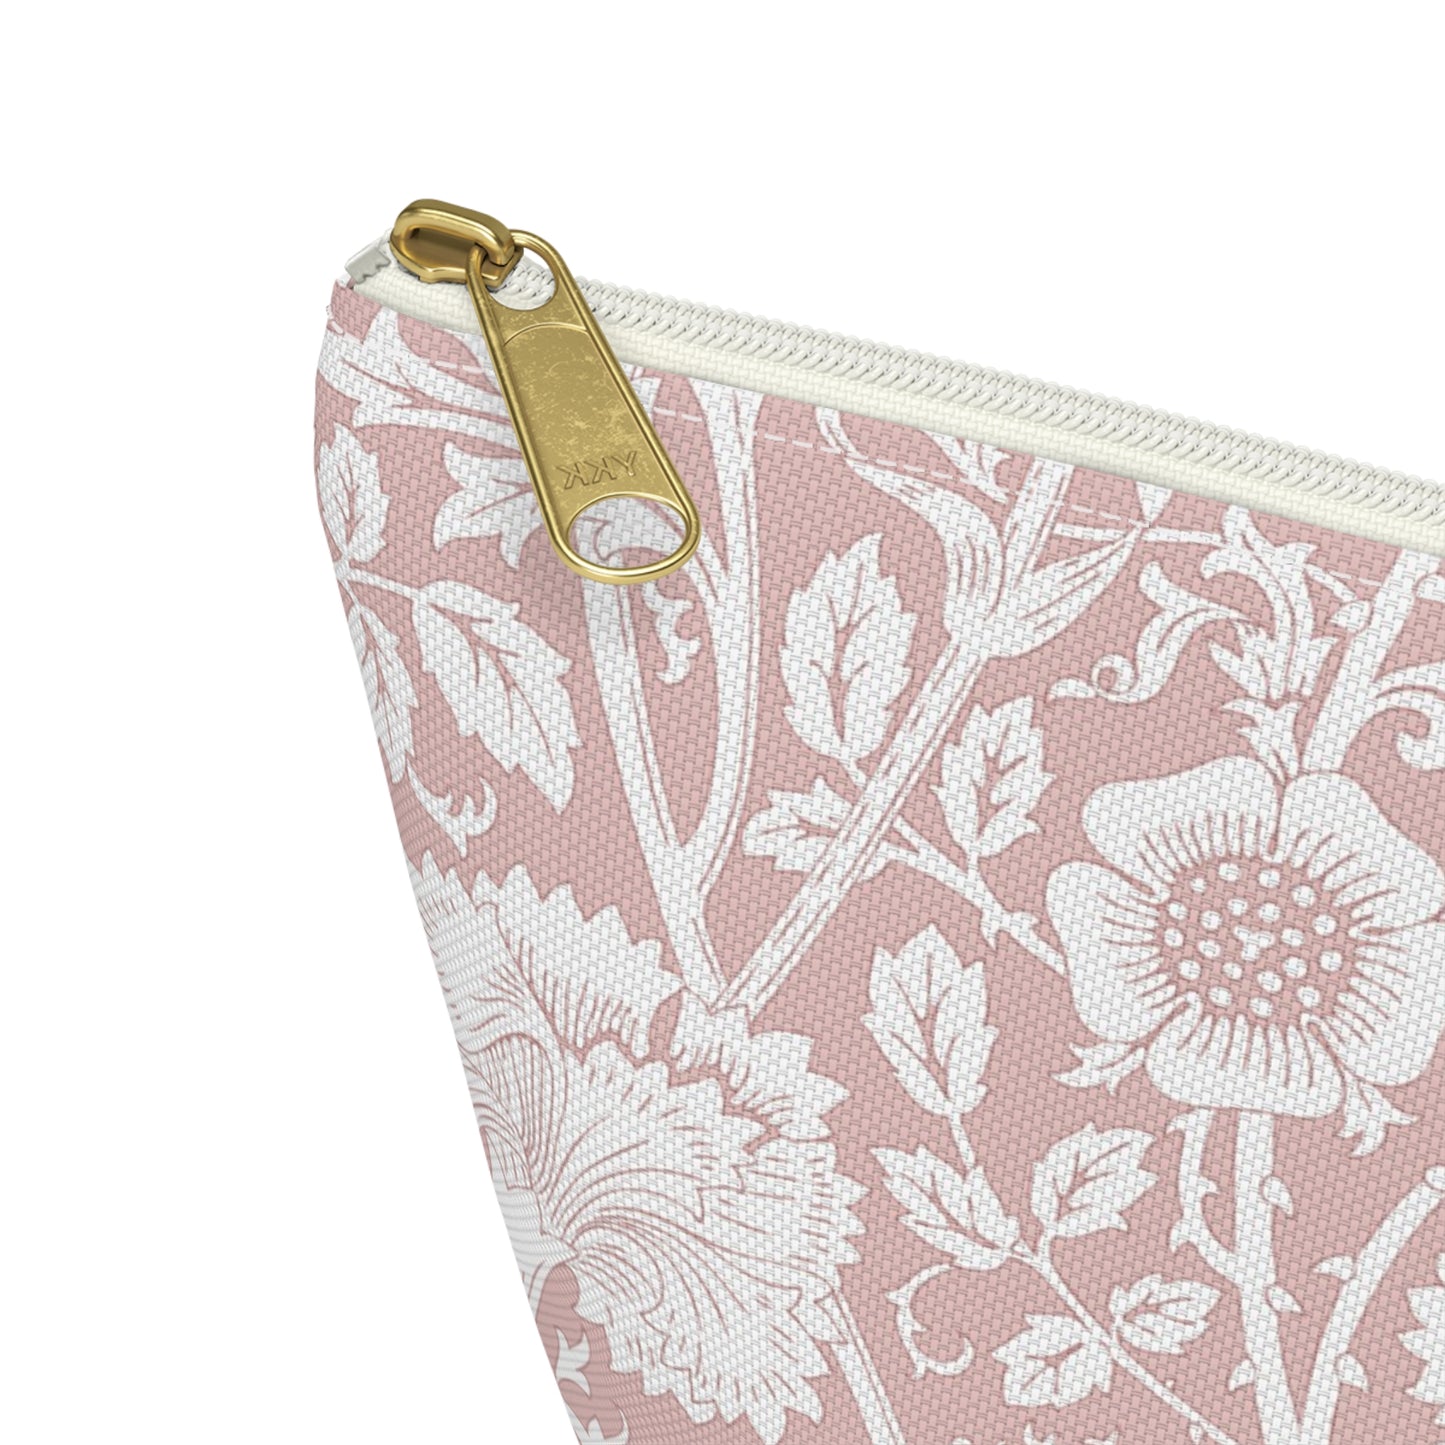 William Morris Pink Rose Toiletries Bag